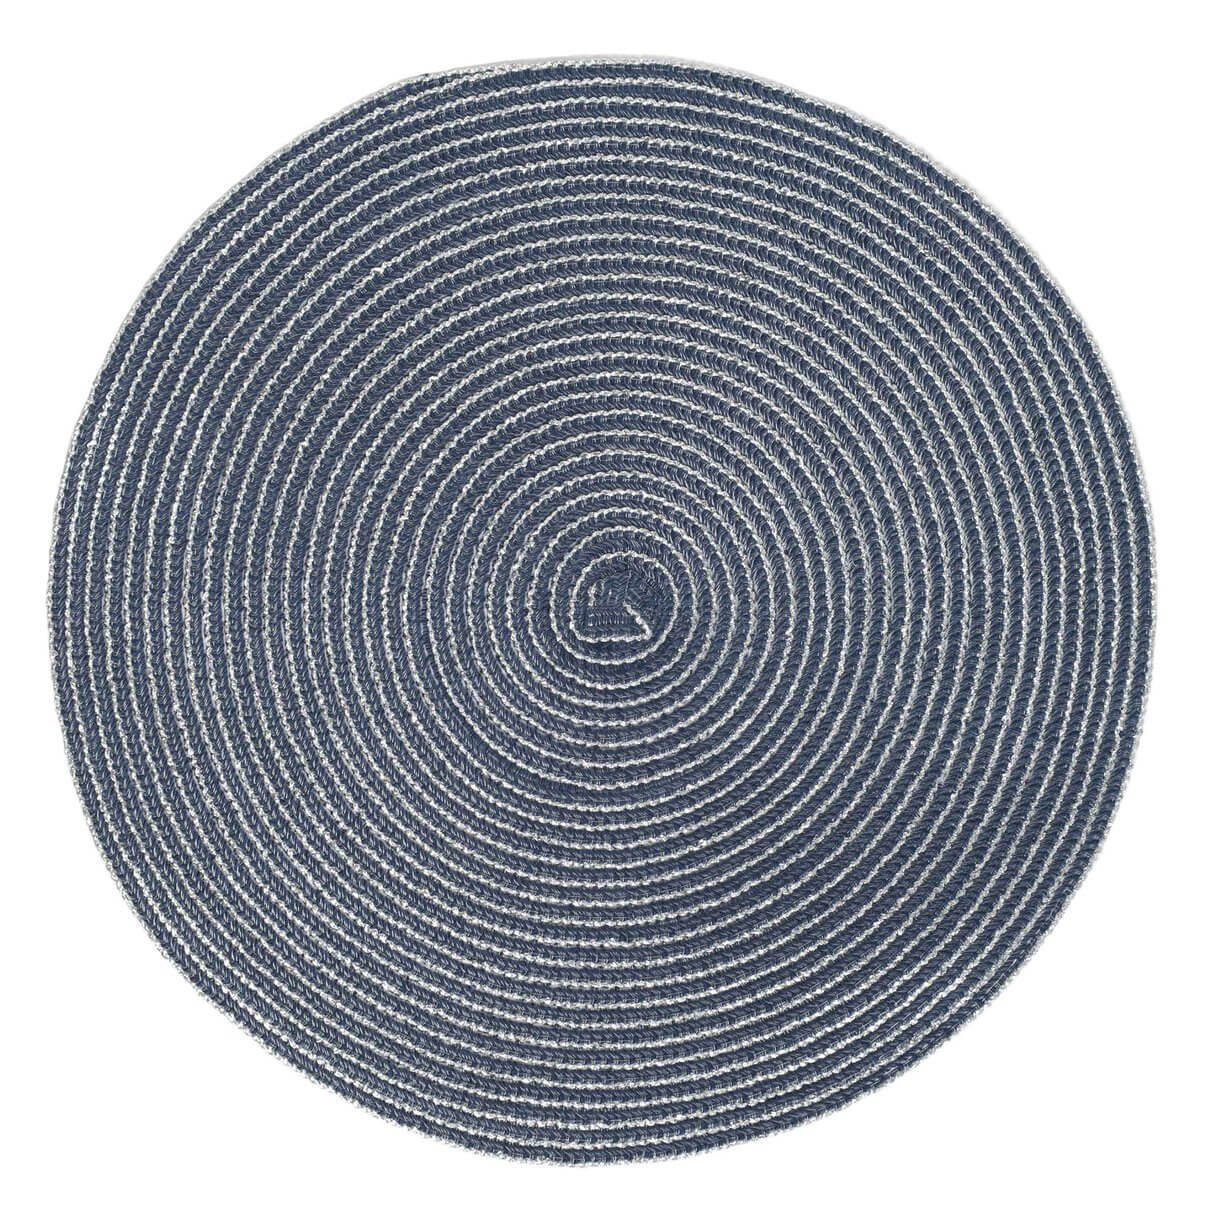 Салфетка под приборы, 38 см, полиэстер, круглая, темно-синяя, Rotary изображение № 1